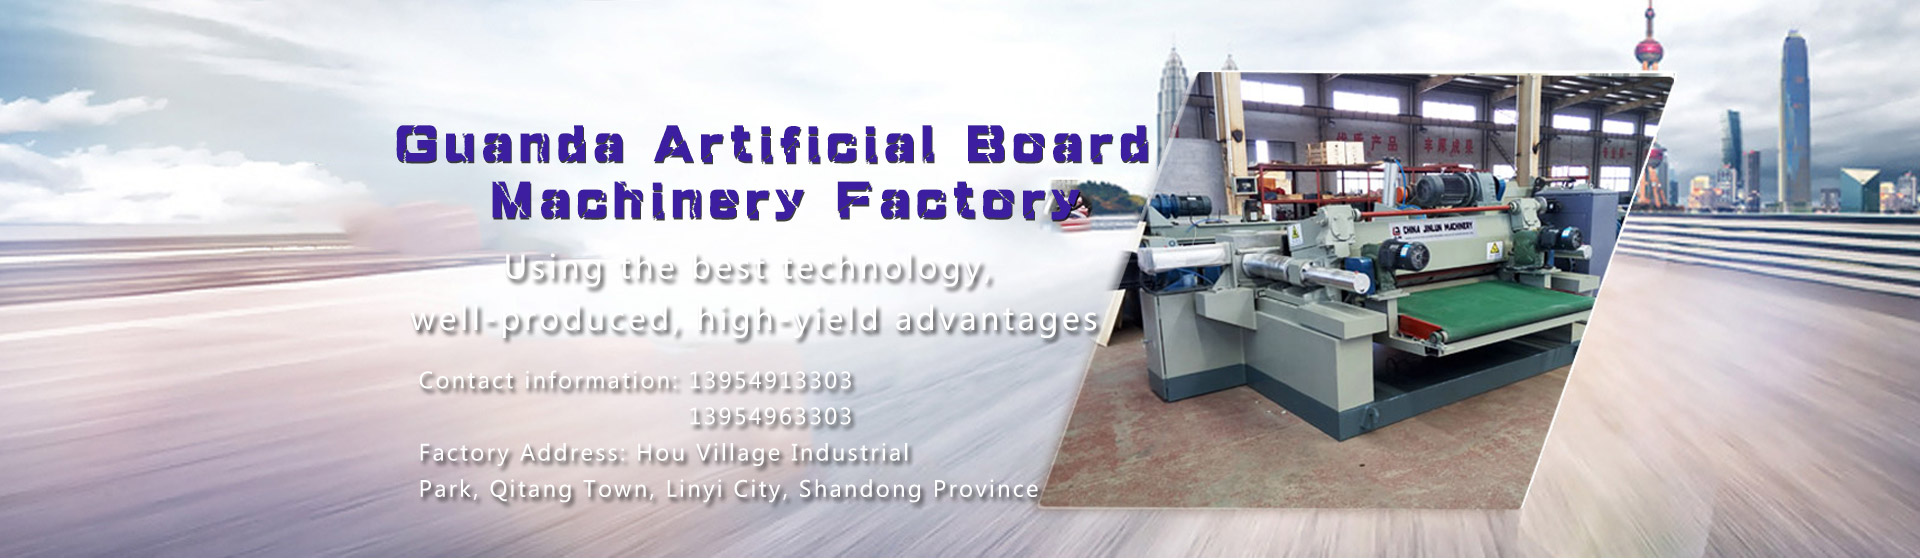 Guanda Artificial Board Machinery Factory